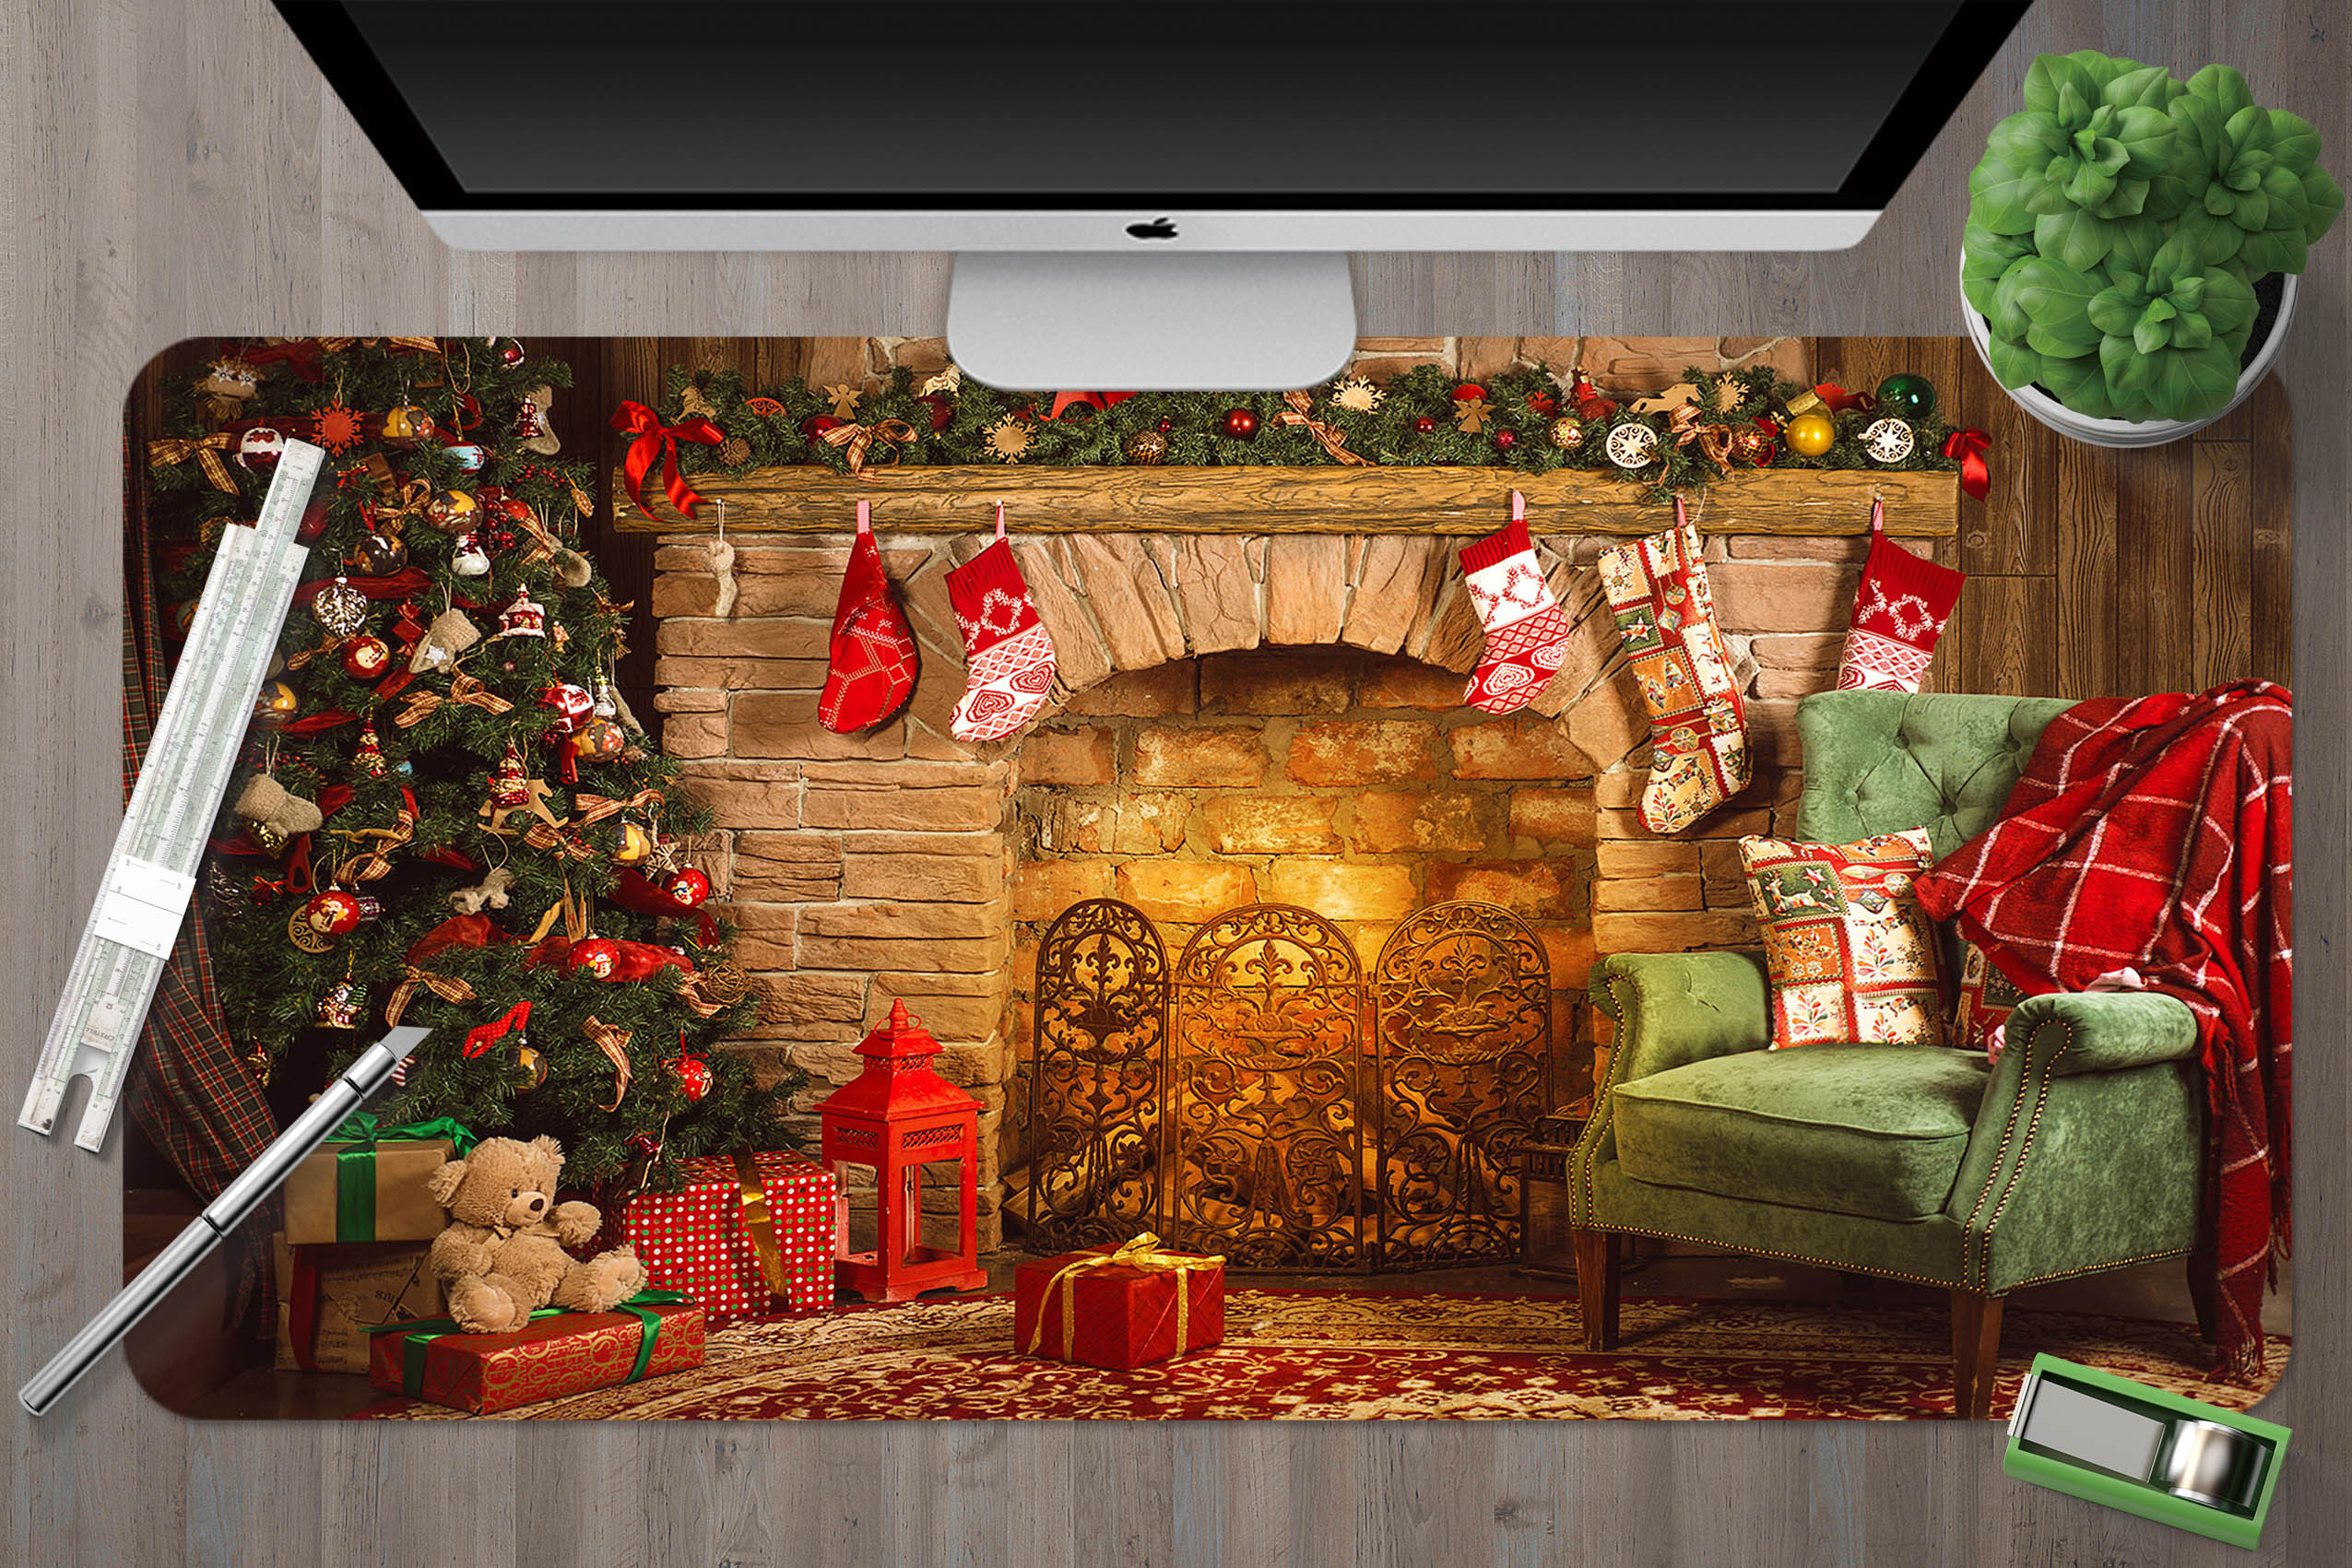 3D Fireplace Sofa 51197 Christmas Desk Mat Xmas